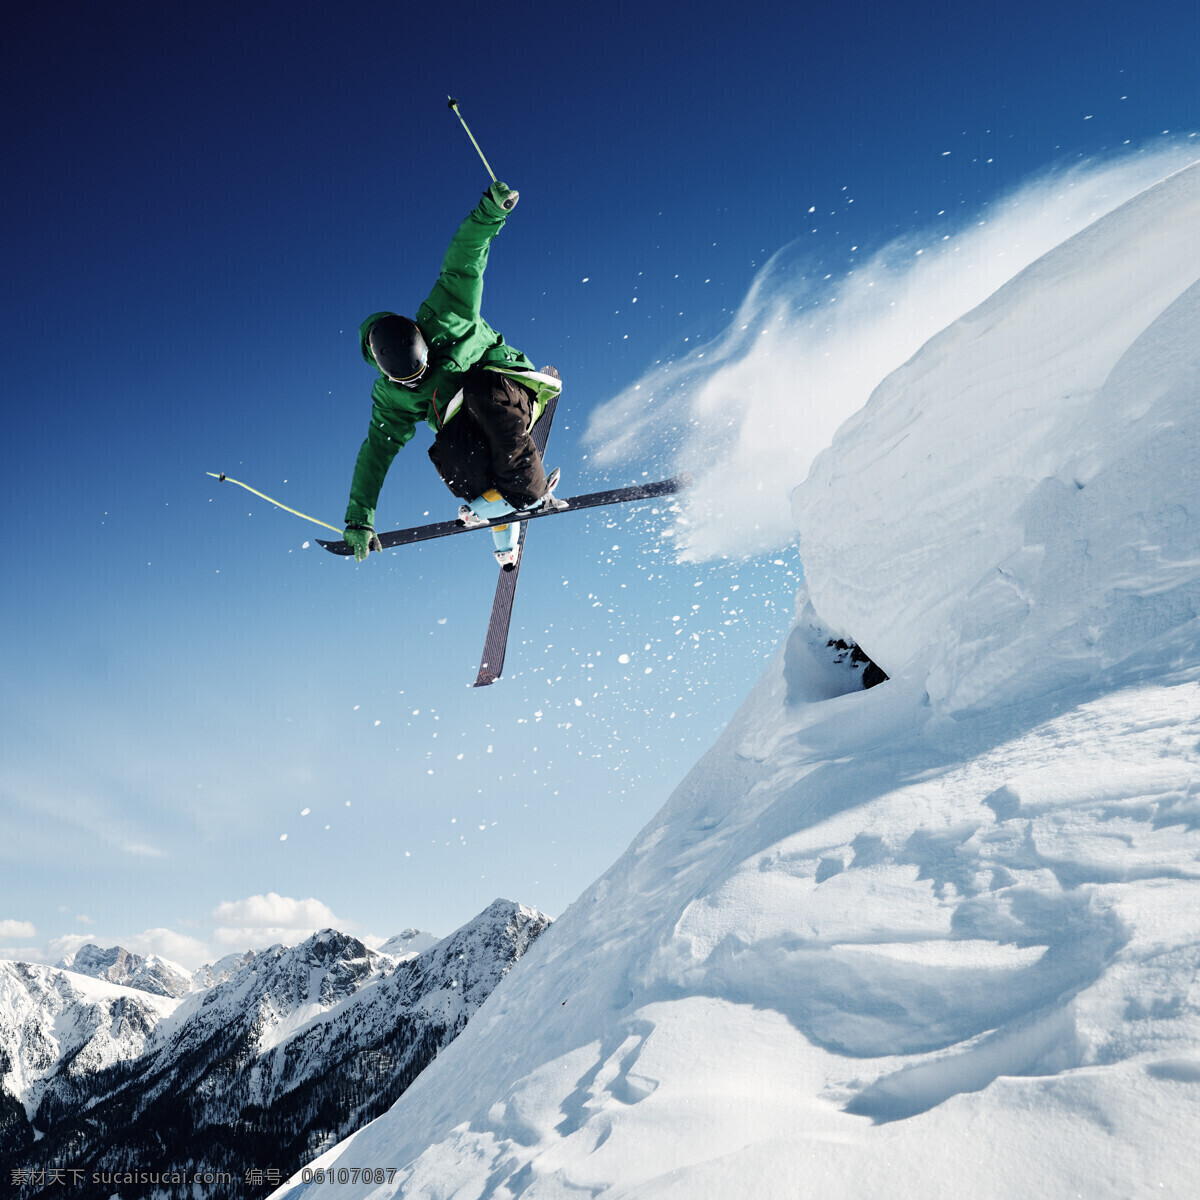 下山 坡 滑雪 运动员 雪花飞舞 高山 雪山 运动 雪地 雪花 滑雪板 户外运动 滑雪图片 生活百科